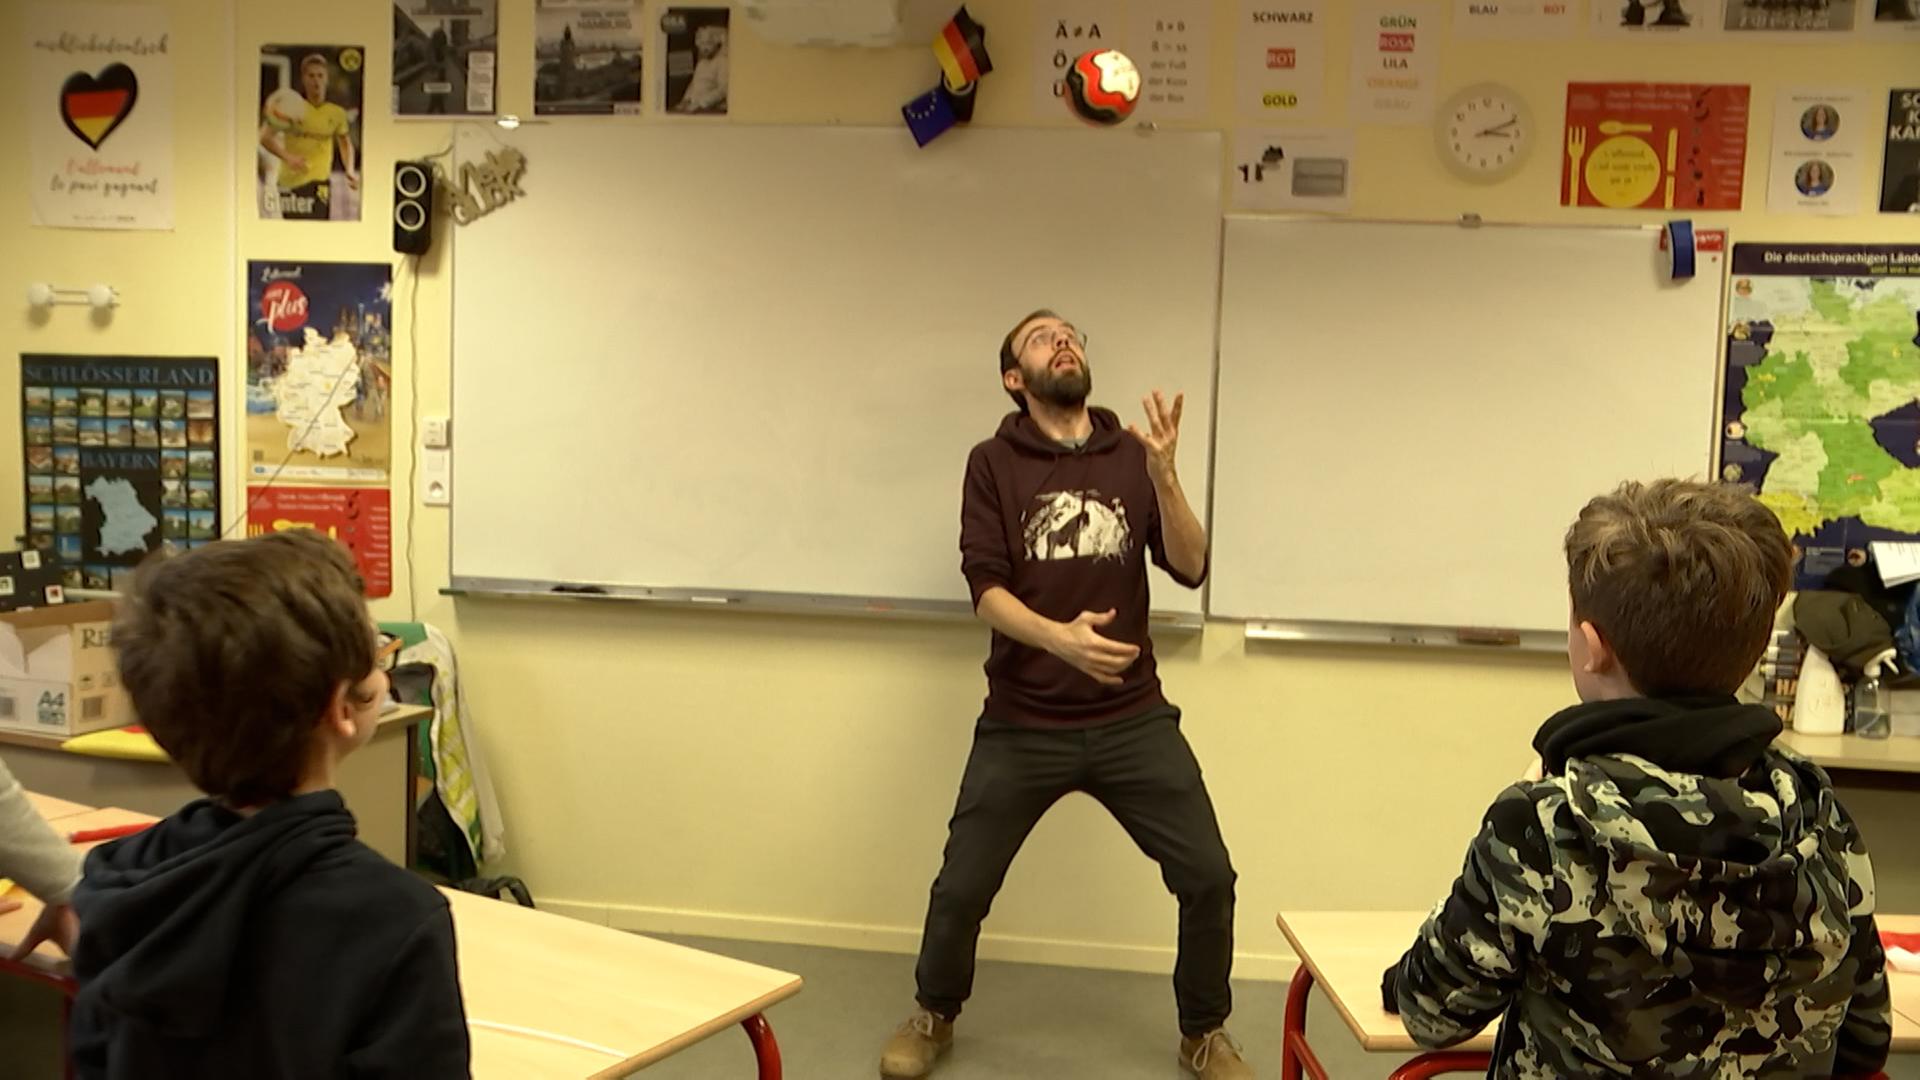 In einem Klassenzimmer macht ein Mann mit Bart einen Kopfball vor der Tafel. Im Hintergrund hägt eine kleine Deutschlandflagge. 